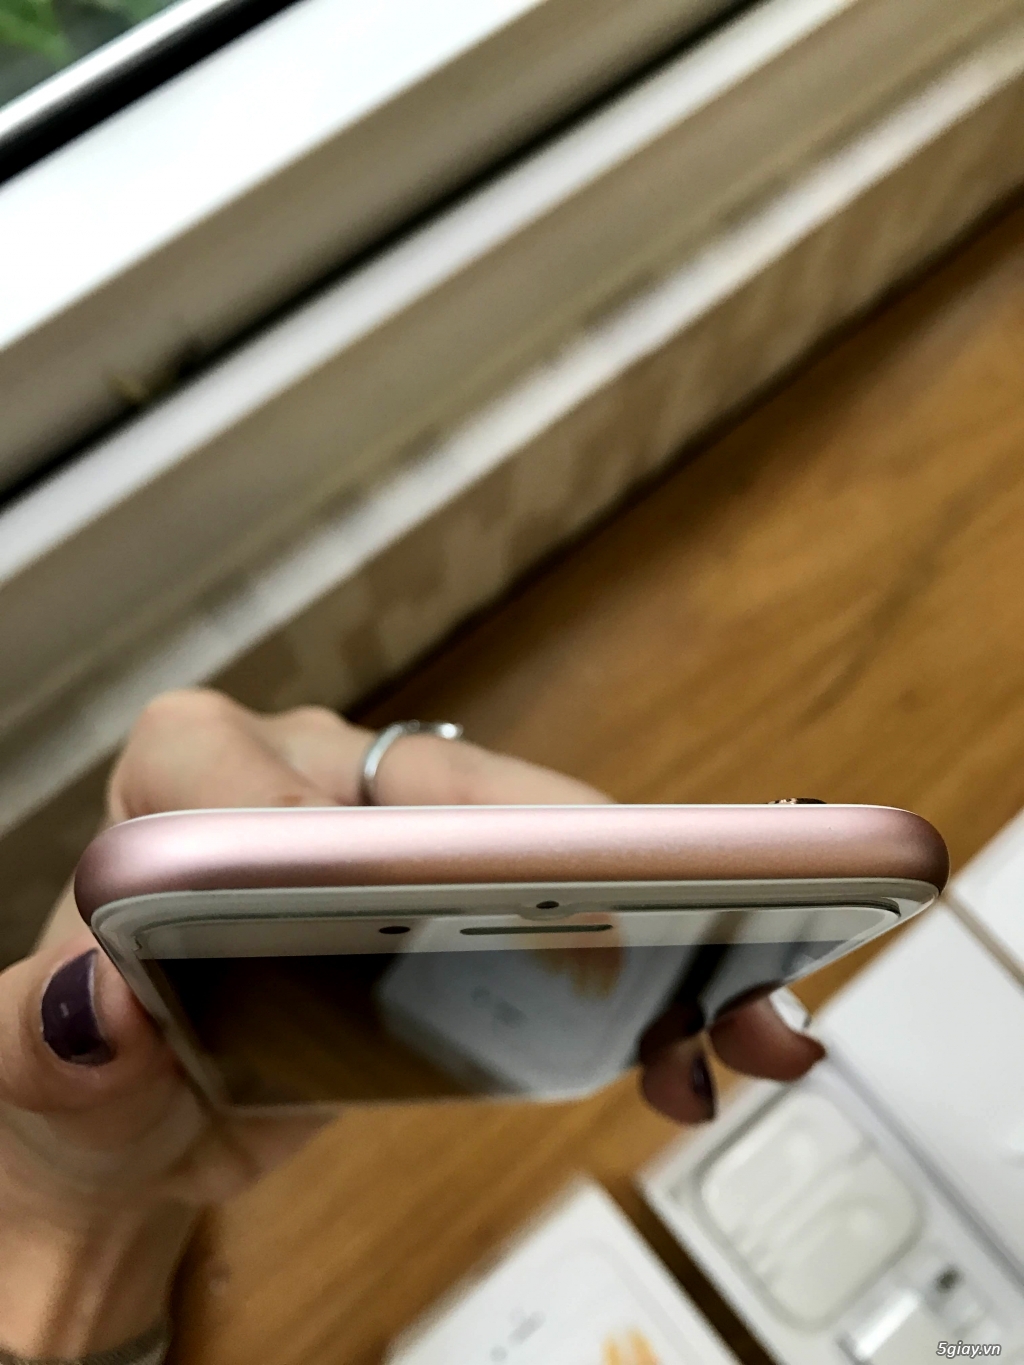 HCM - Iphone 6s 64GB Pink - con gái xài, vừa mới hết bảo hành. - 9